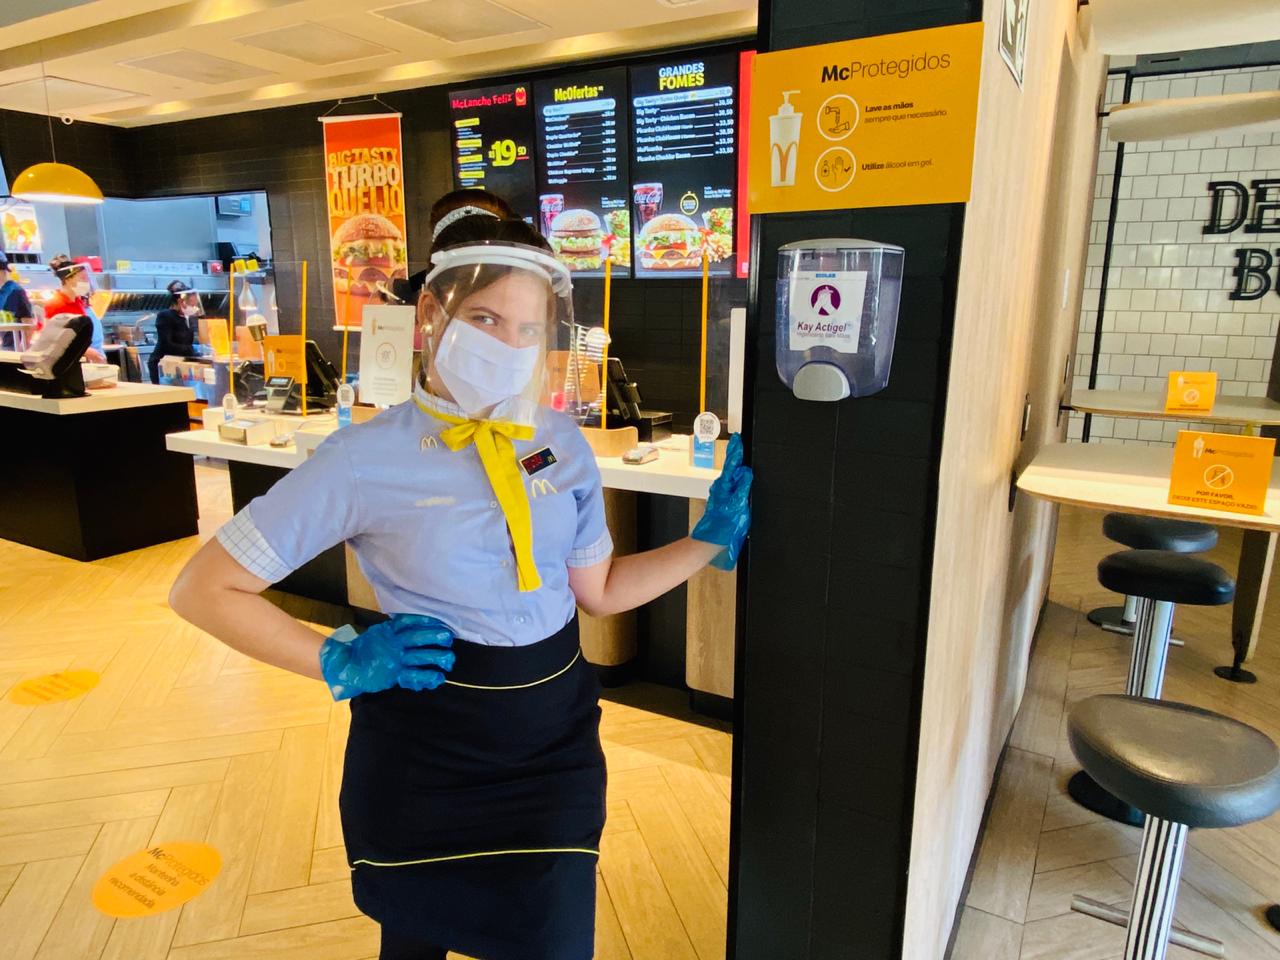 [Brasil] McDonald’s lança campanha para reforçar segurança nos restaurantes